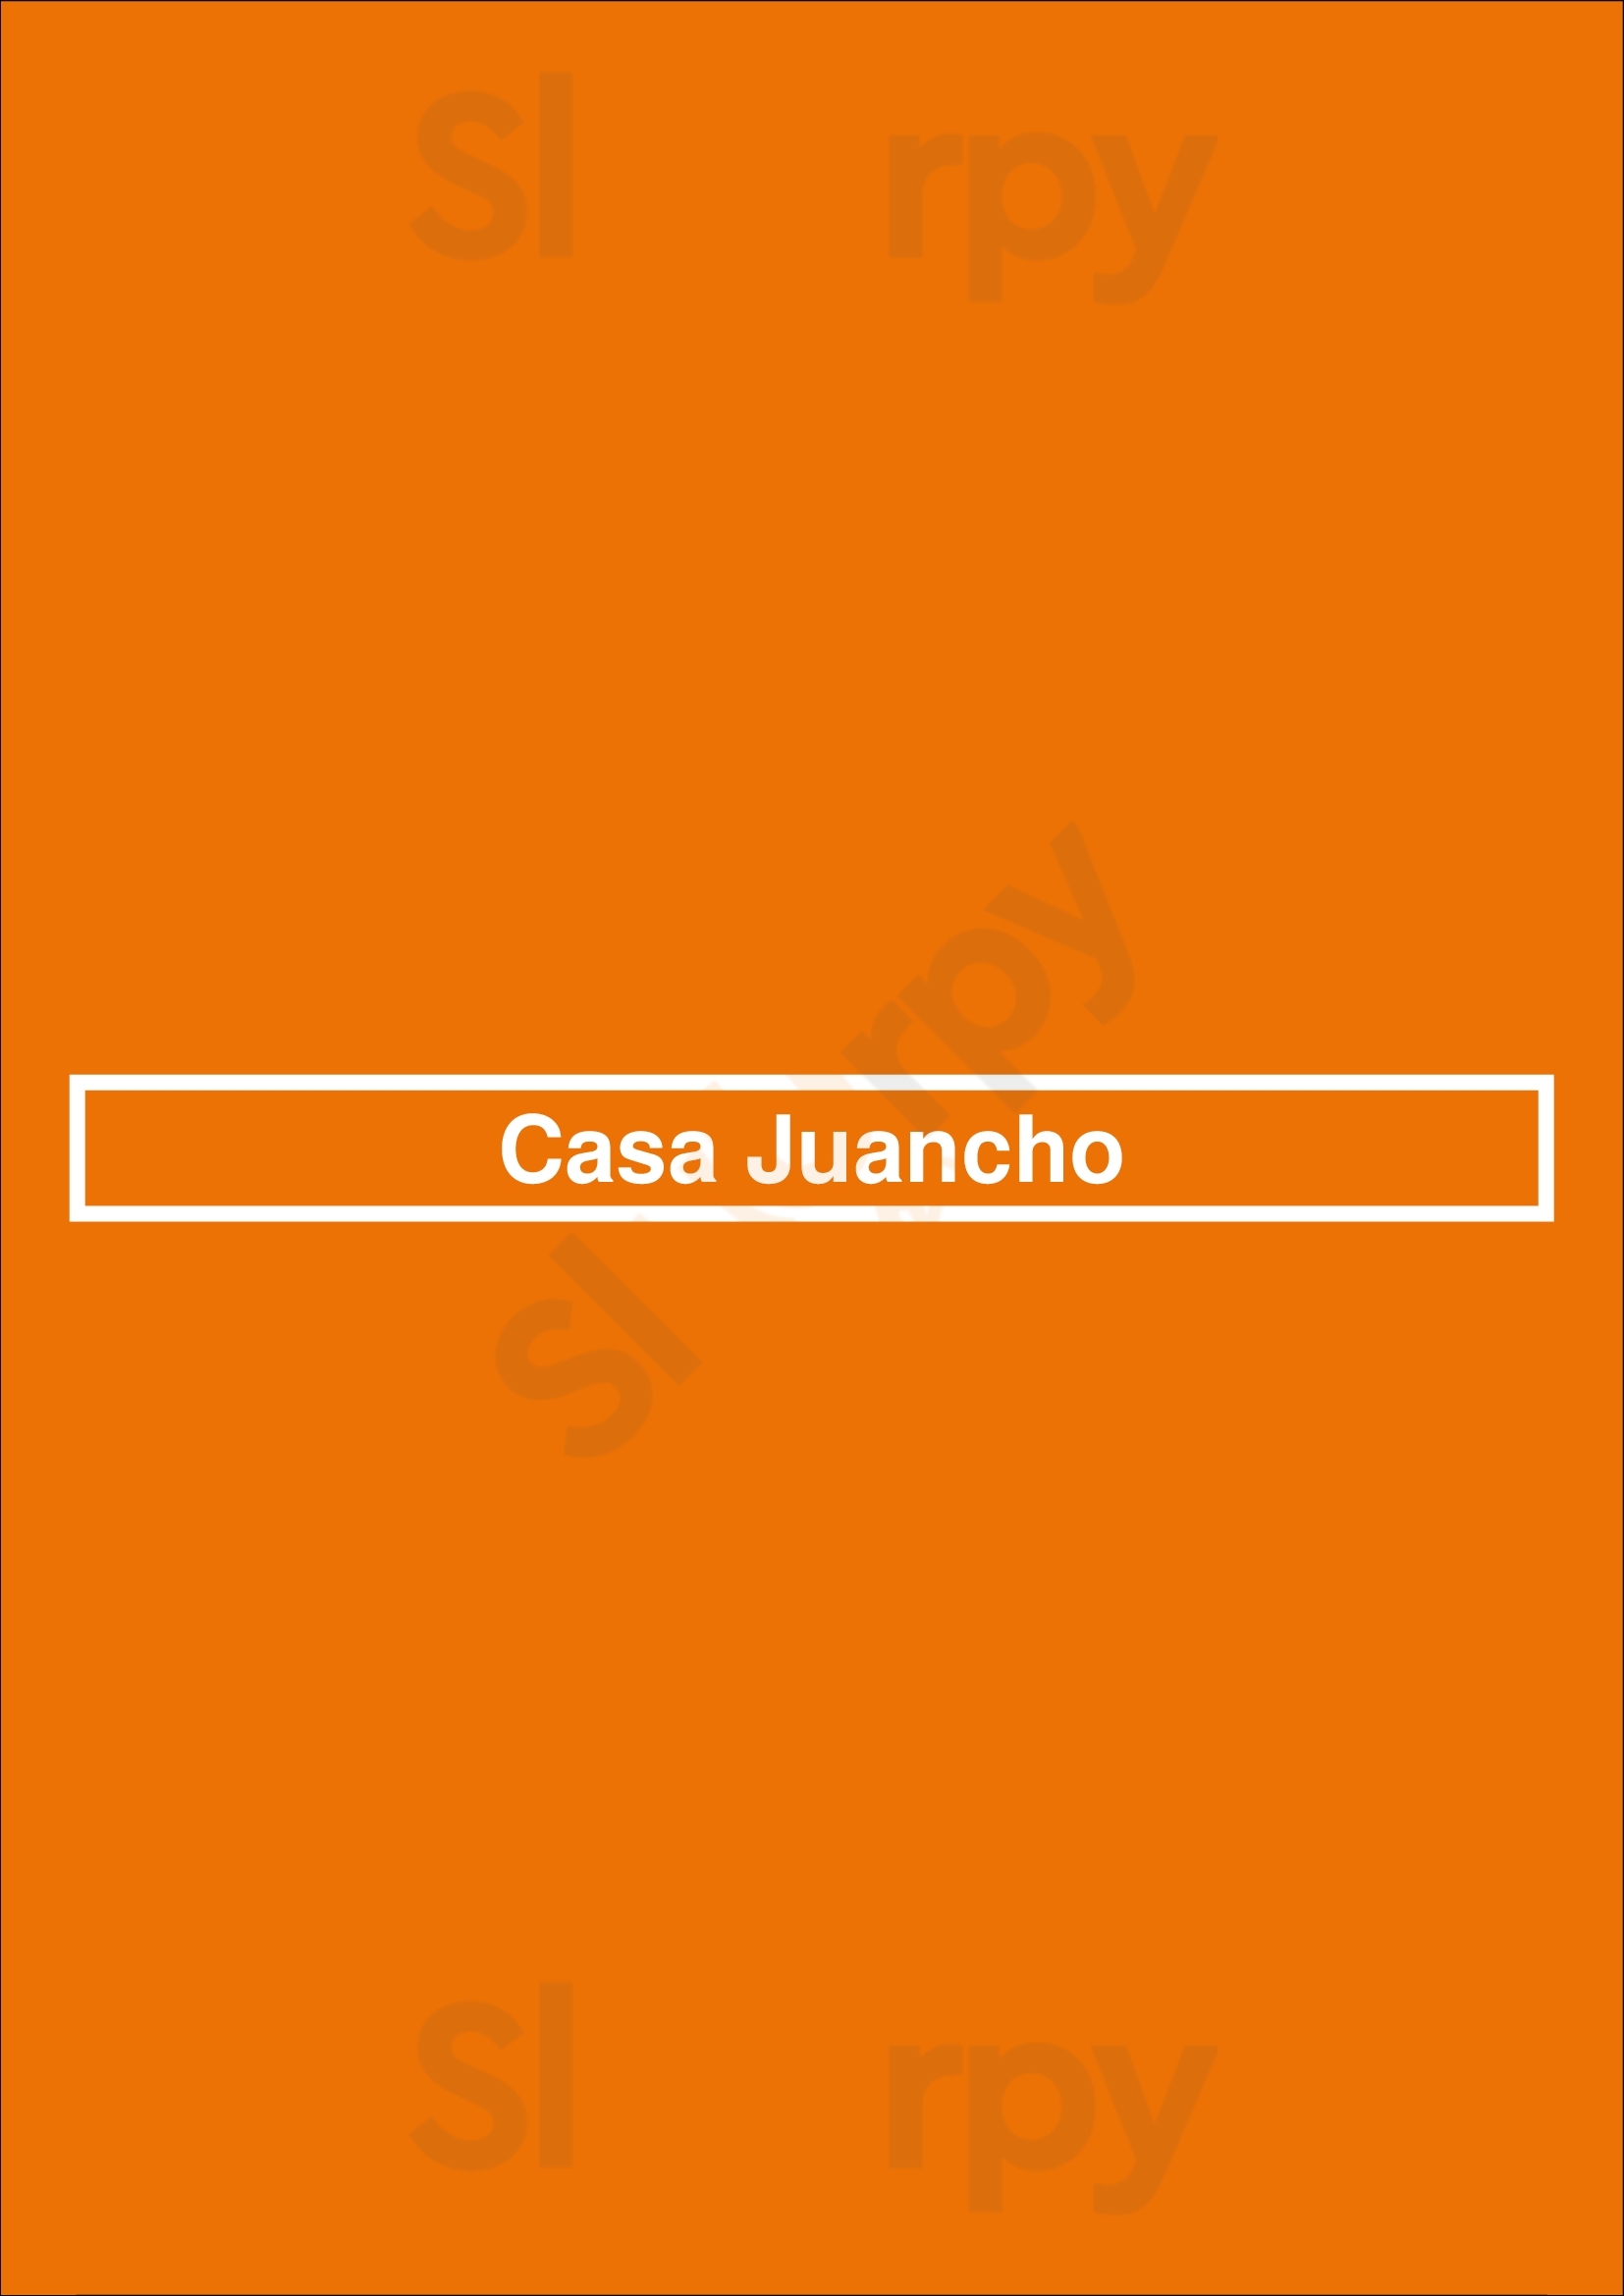 Casa Juancho Miami Menu - 1